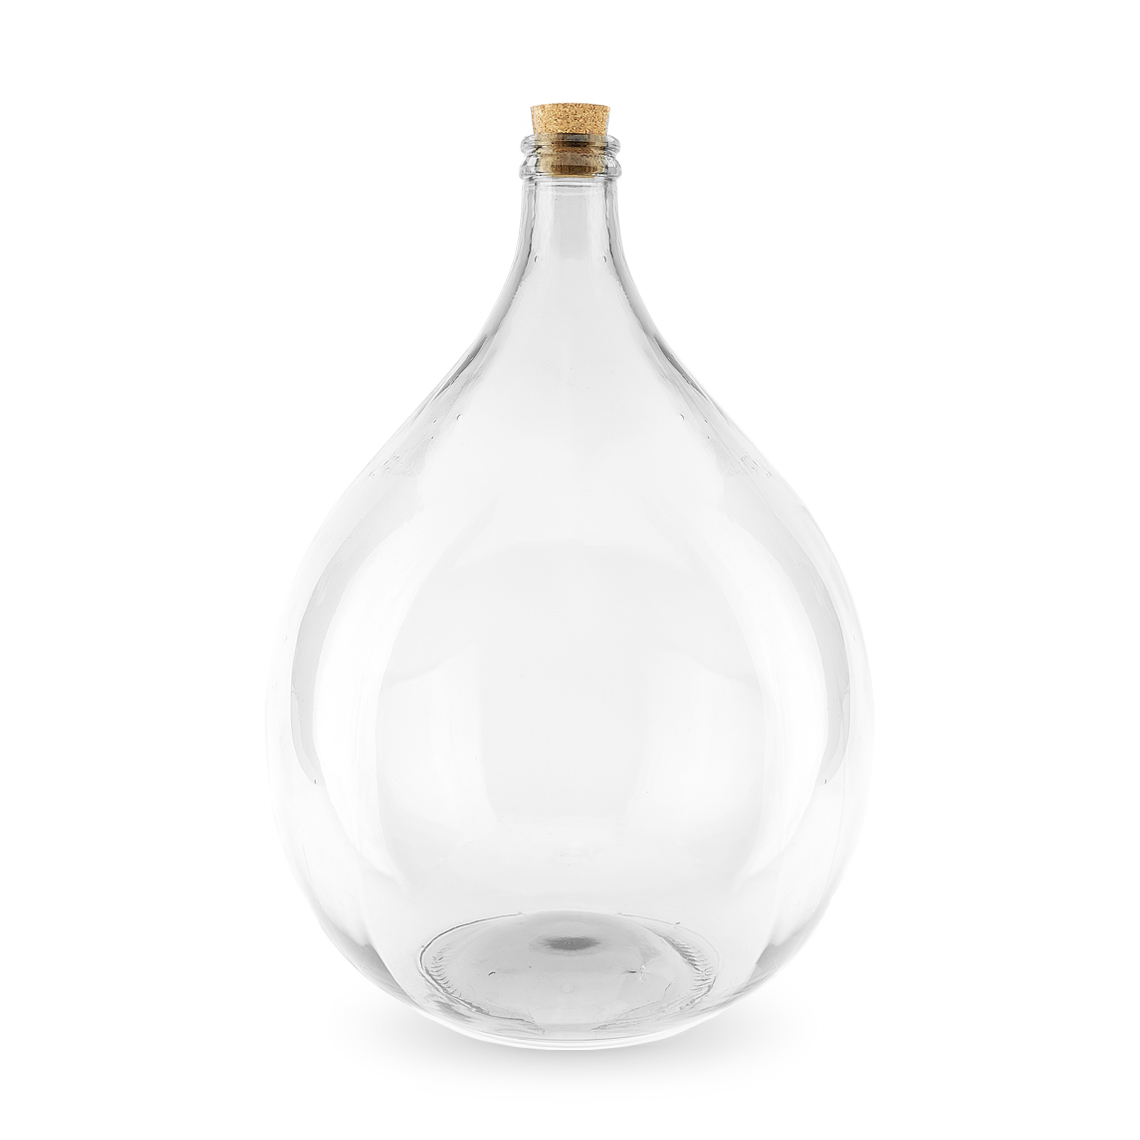 Kan niet creatief werkwoord Terrarium glazen fles 25 liter kopen - Stekkie